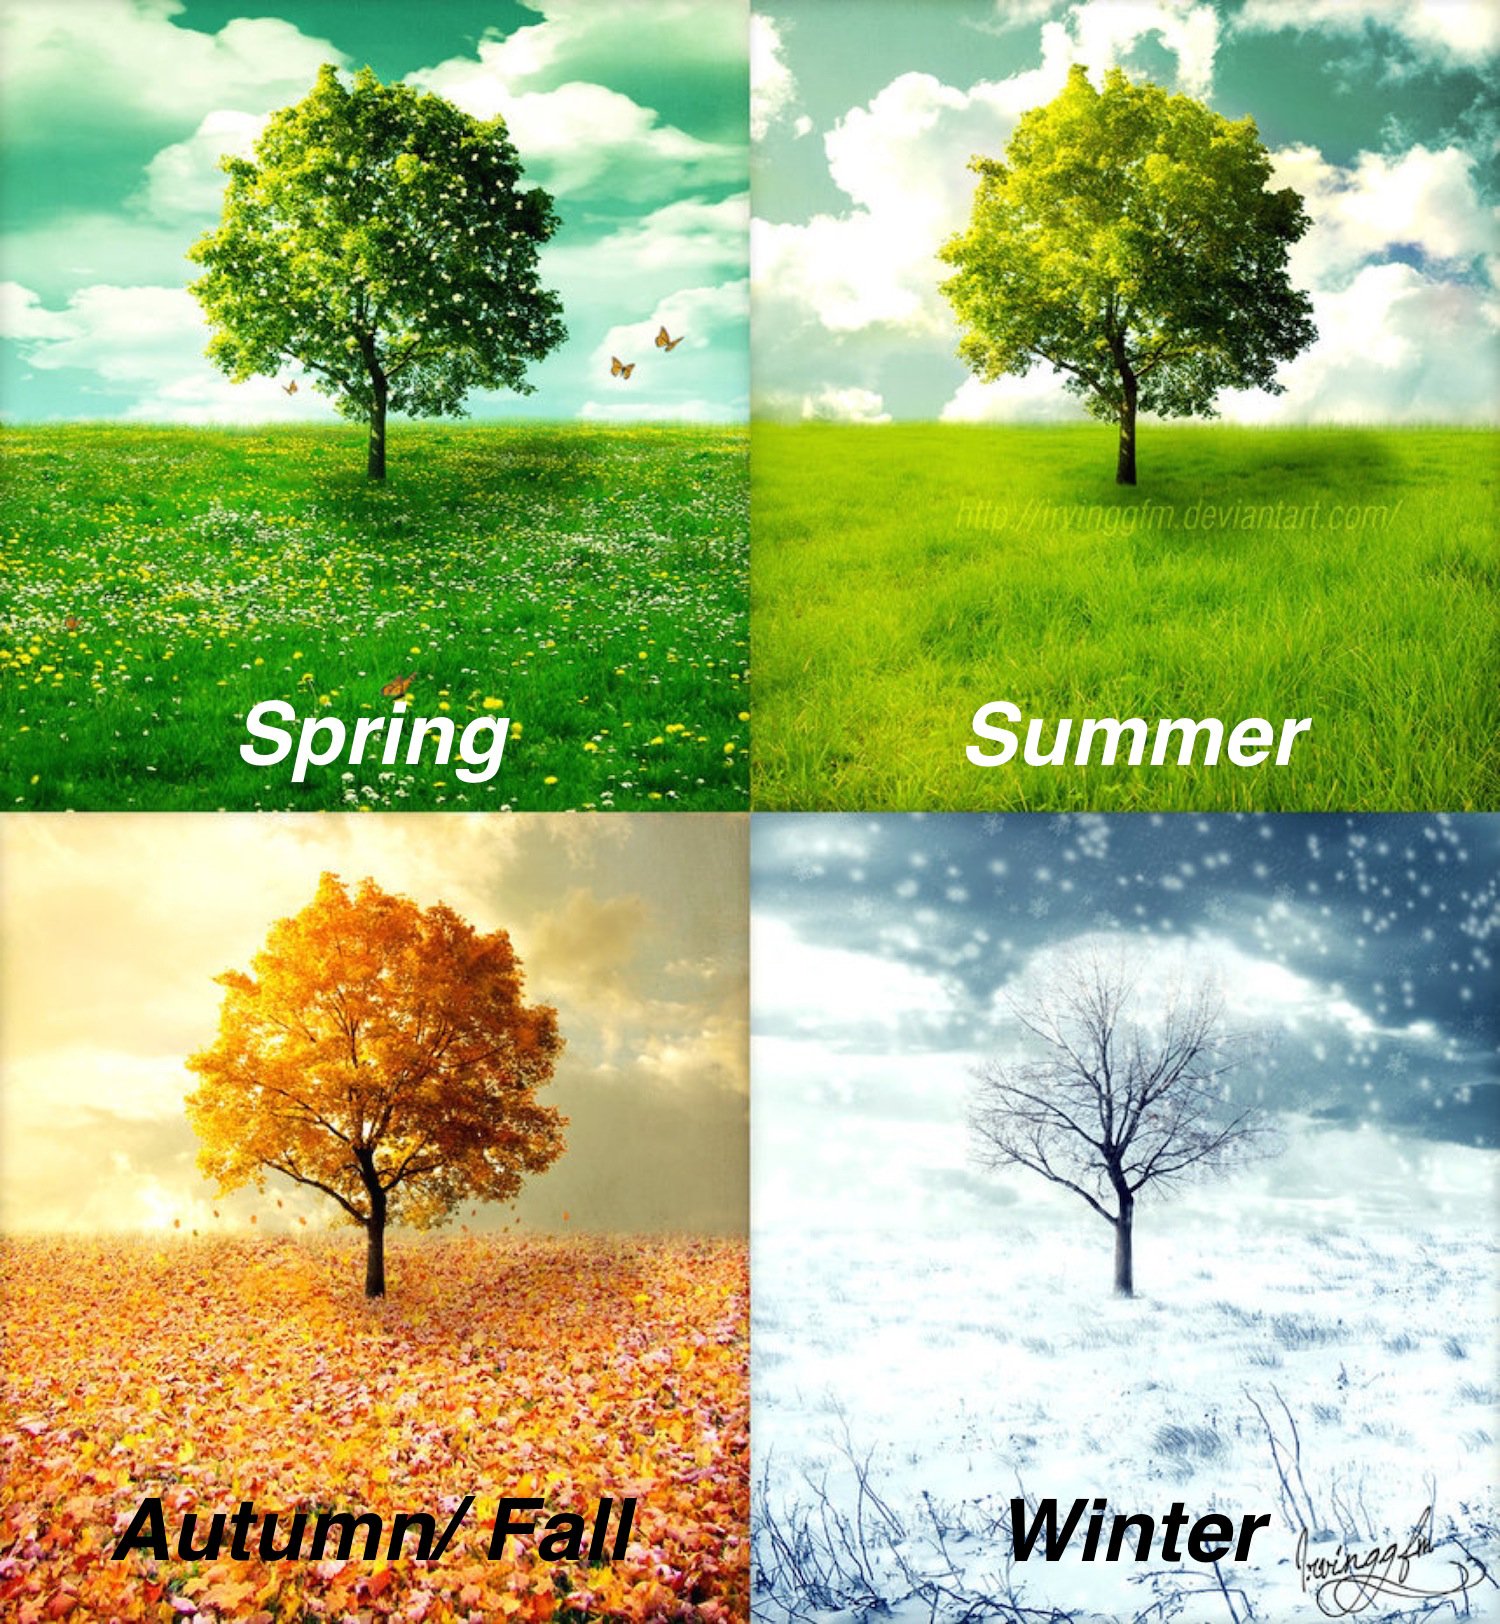 تعلَّم الإنجليزية معنا on Twitter: "الفصول الأربعة: Four Seasons